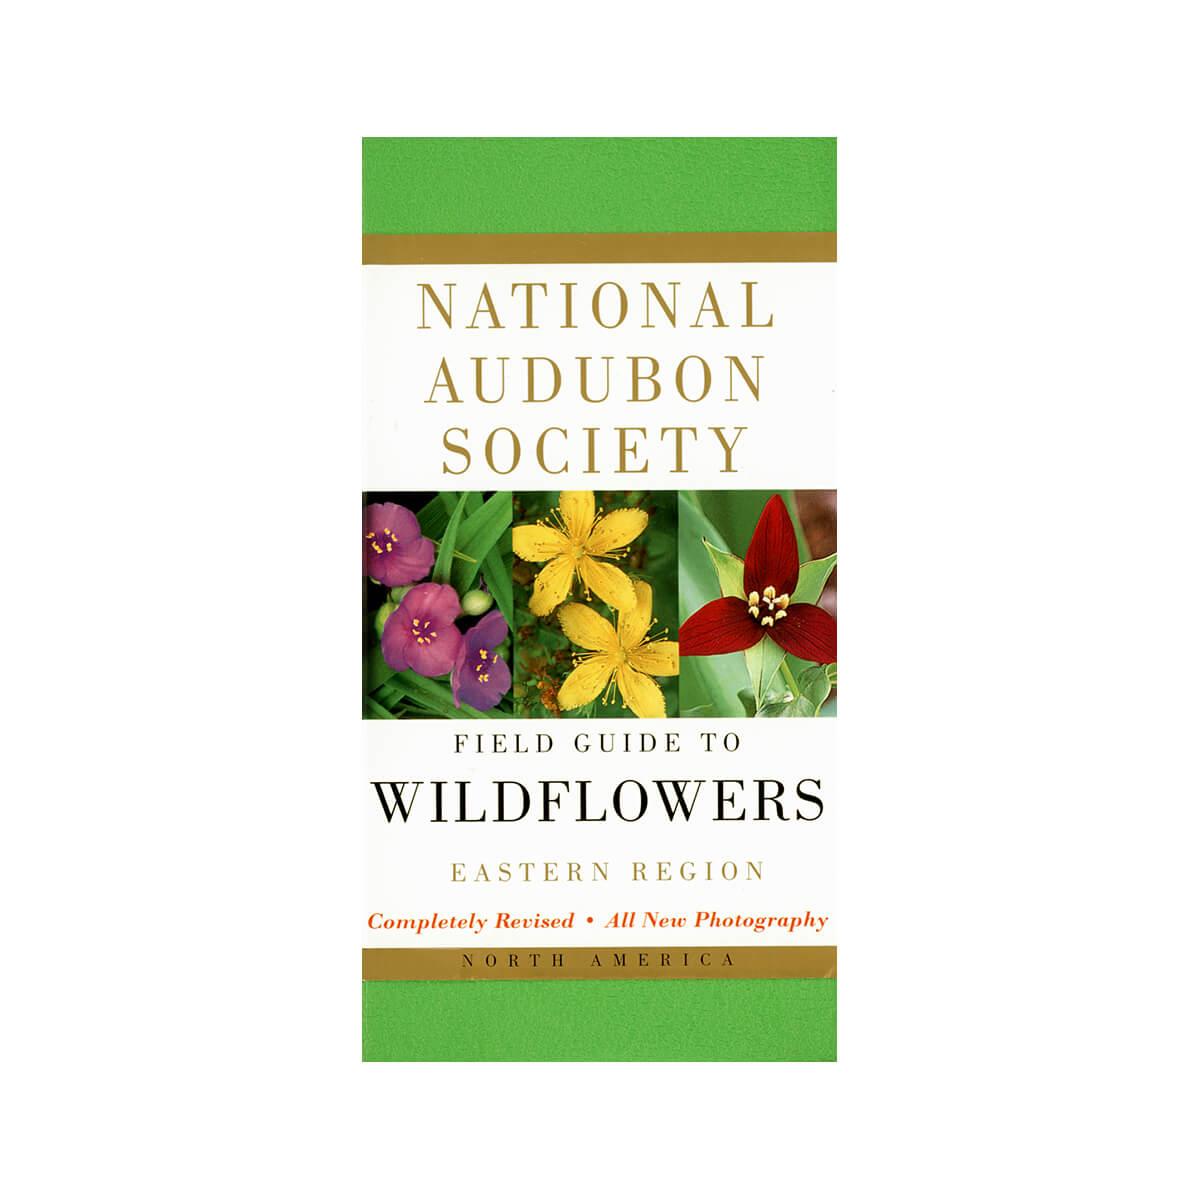  Field Guide To Wildflowers - Eastern Region